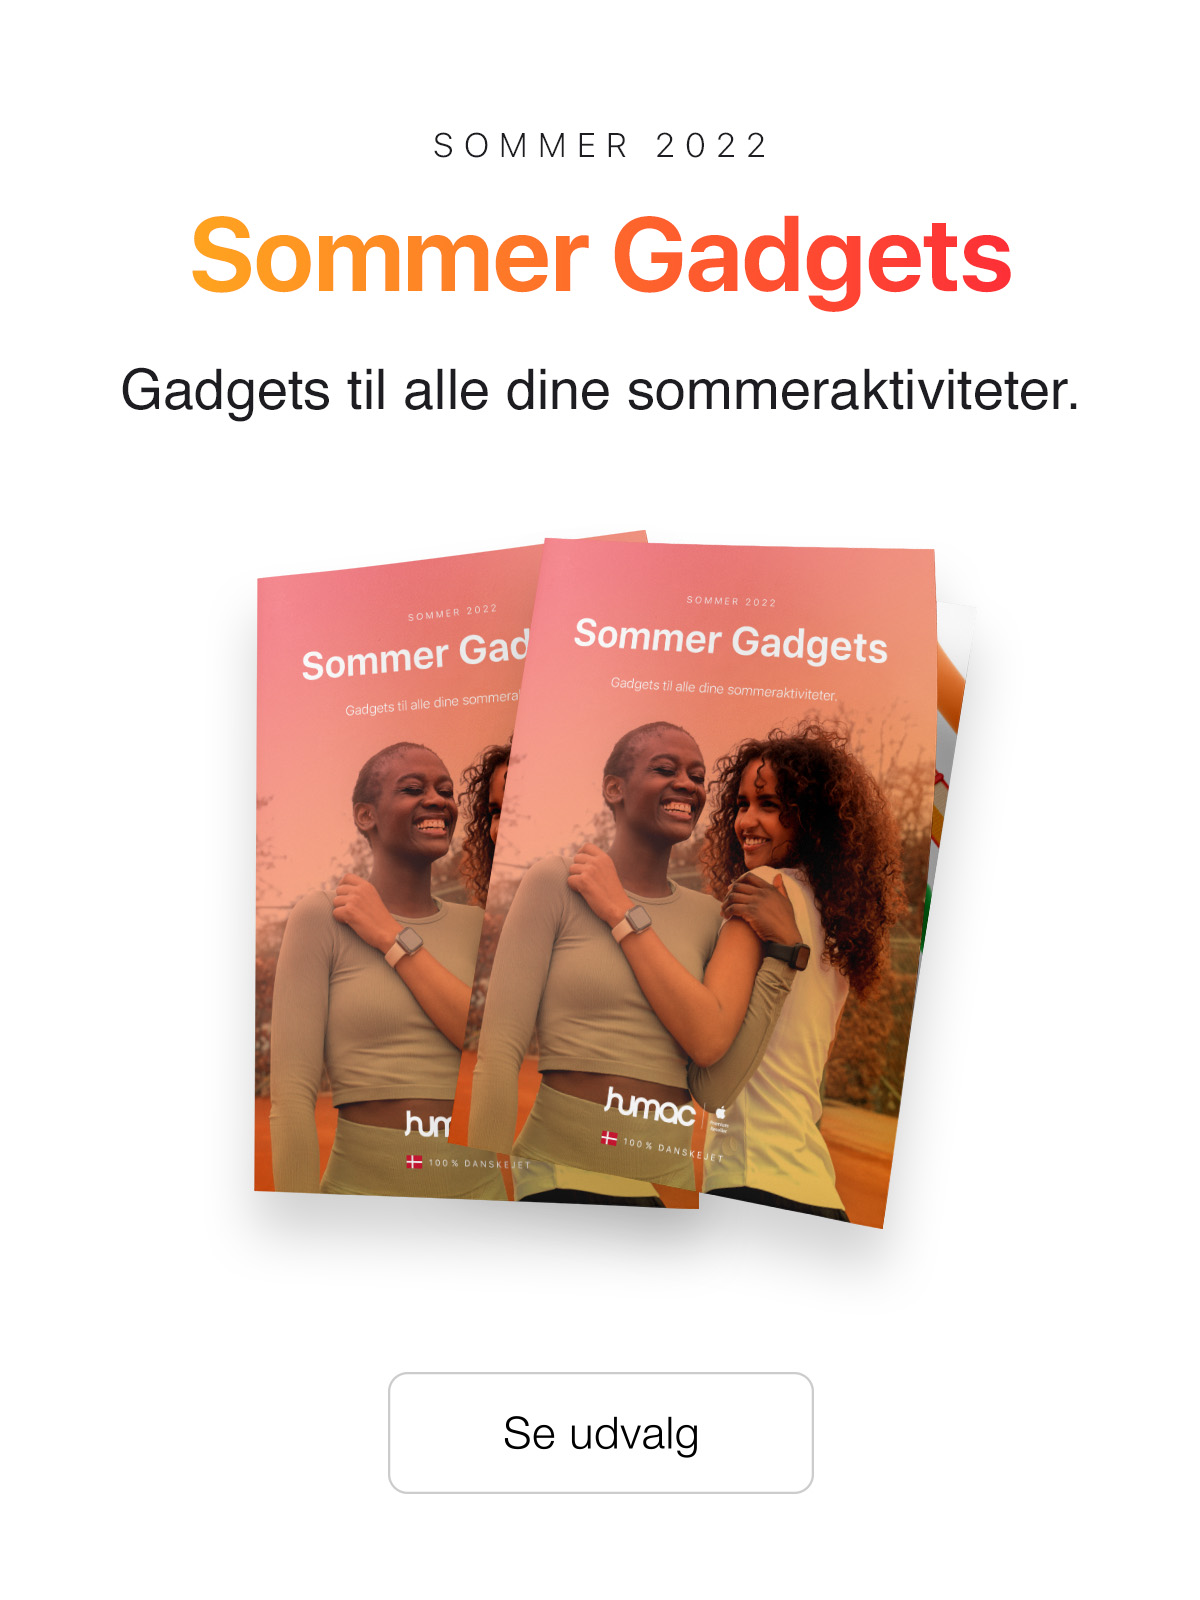 Gadgets til din sommer